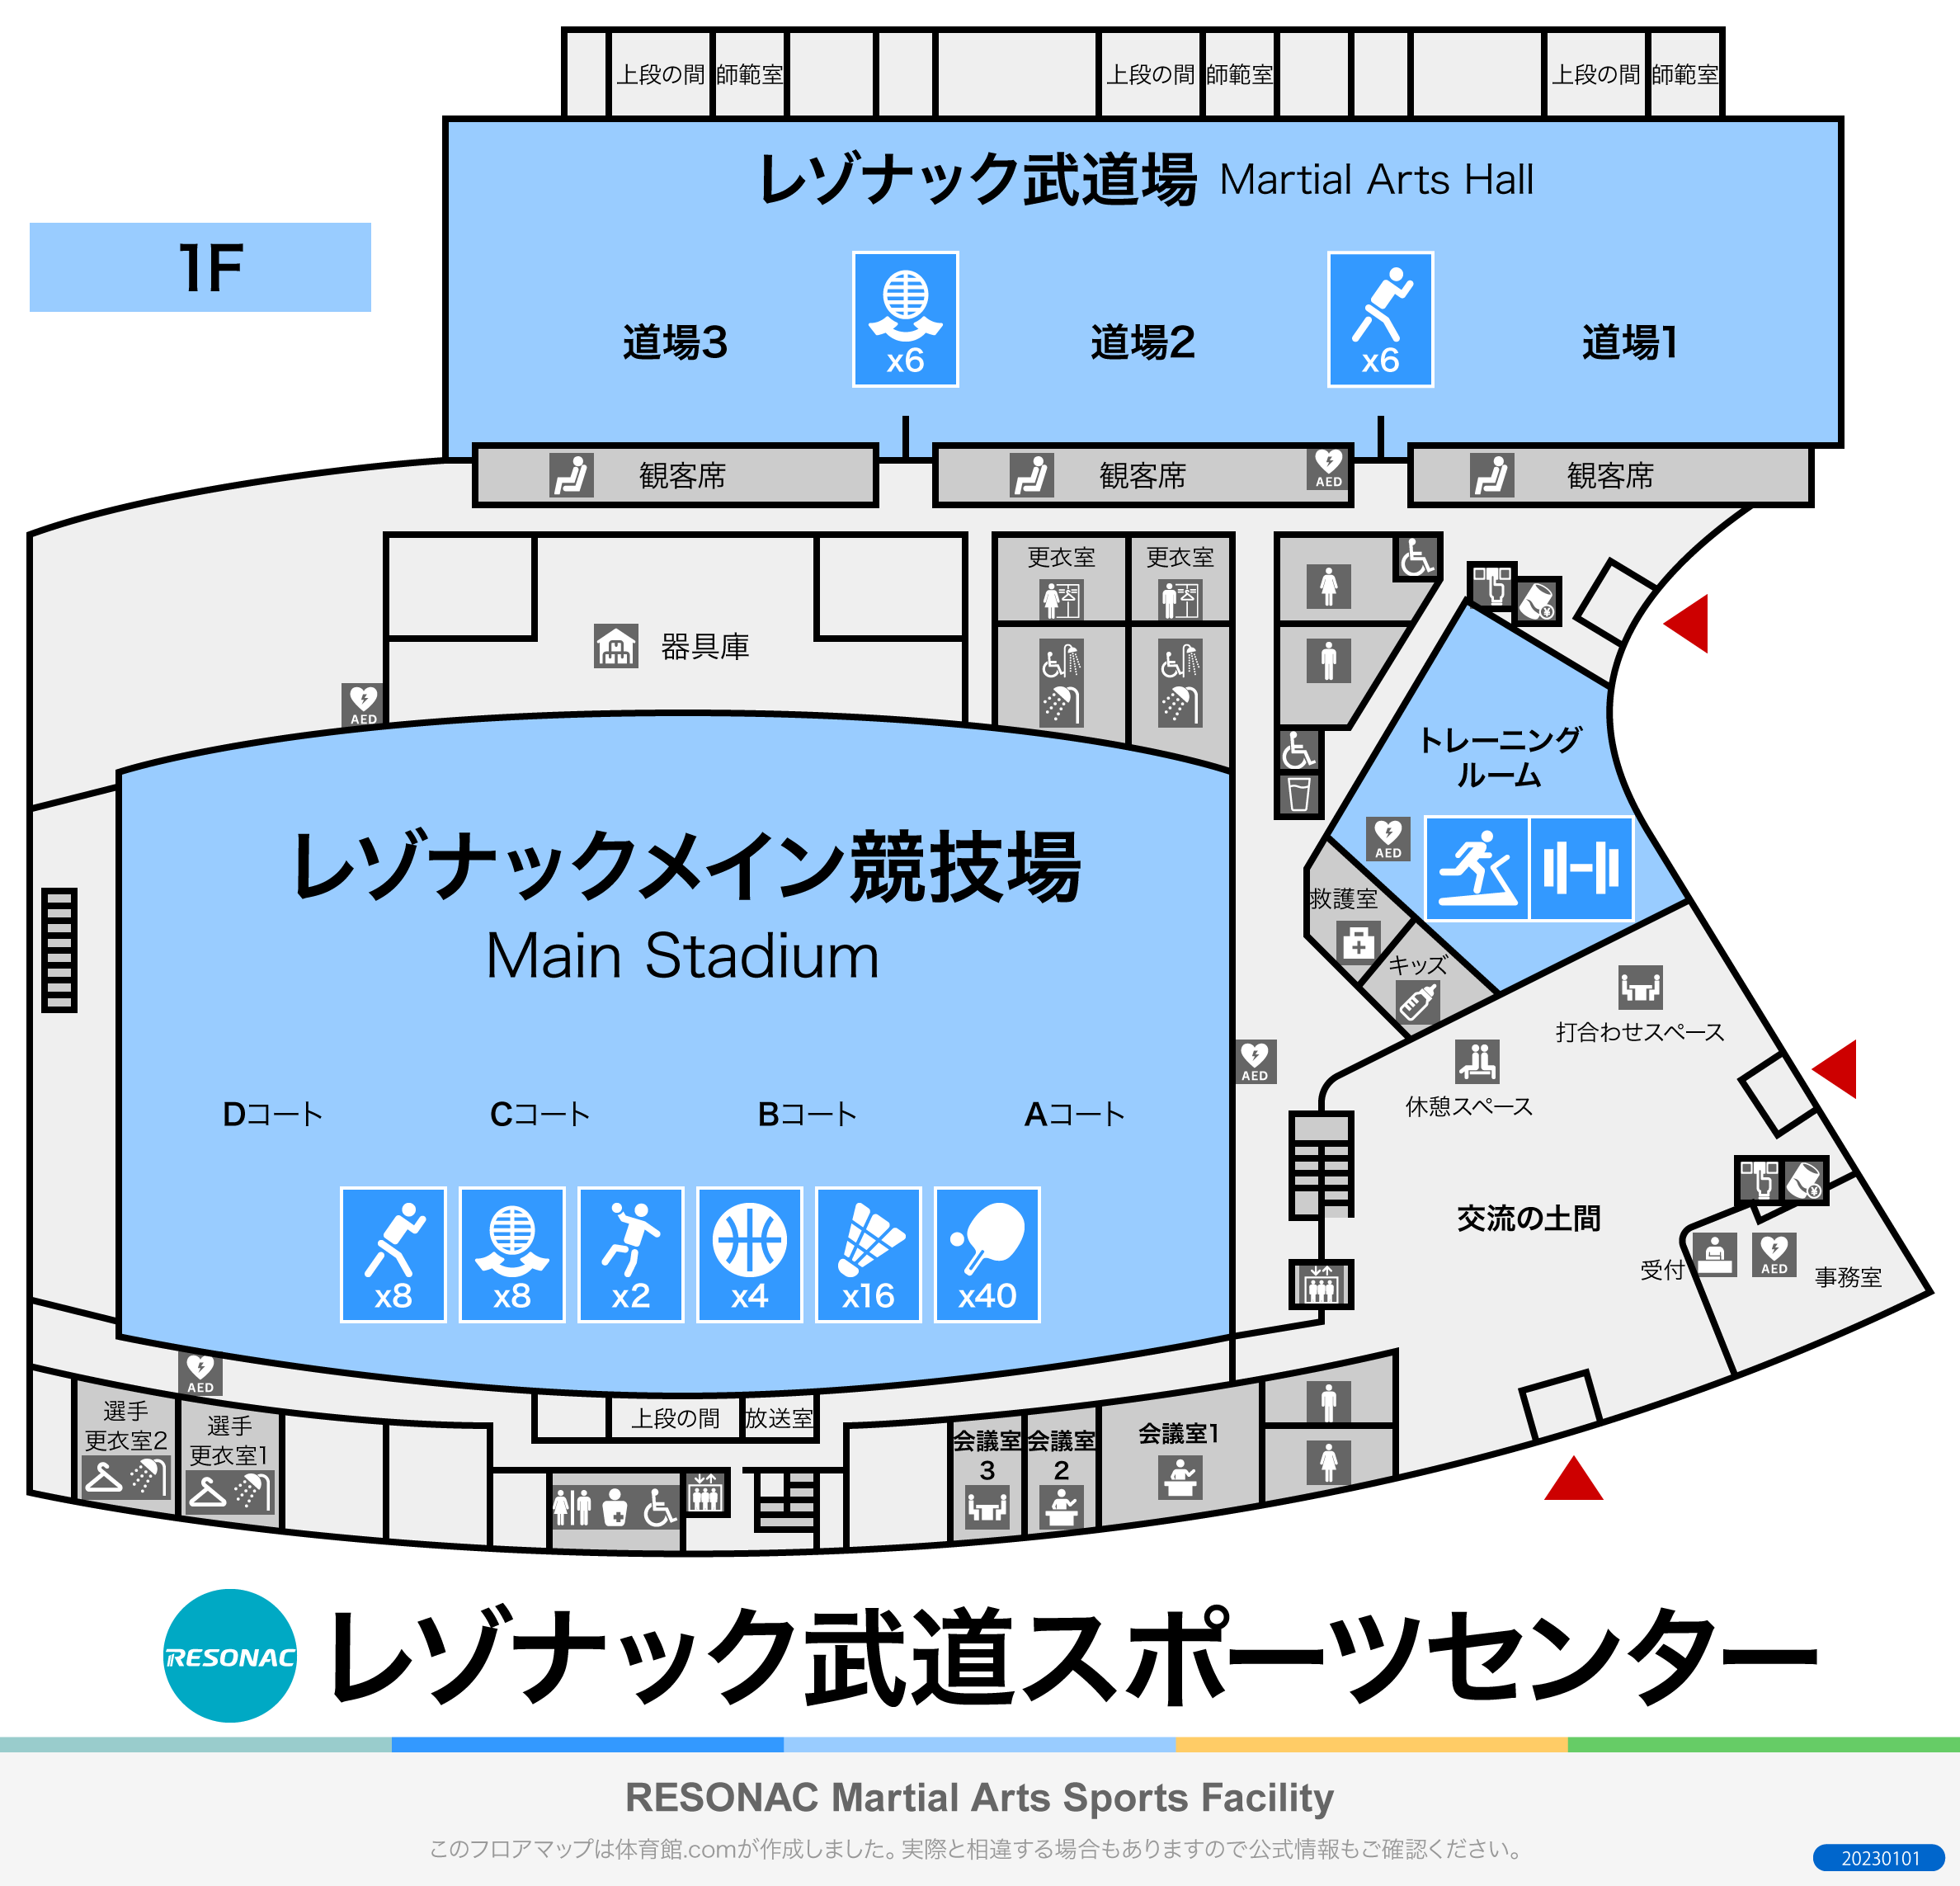 昭和電工武道スポーツセンターのフロアマップ